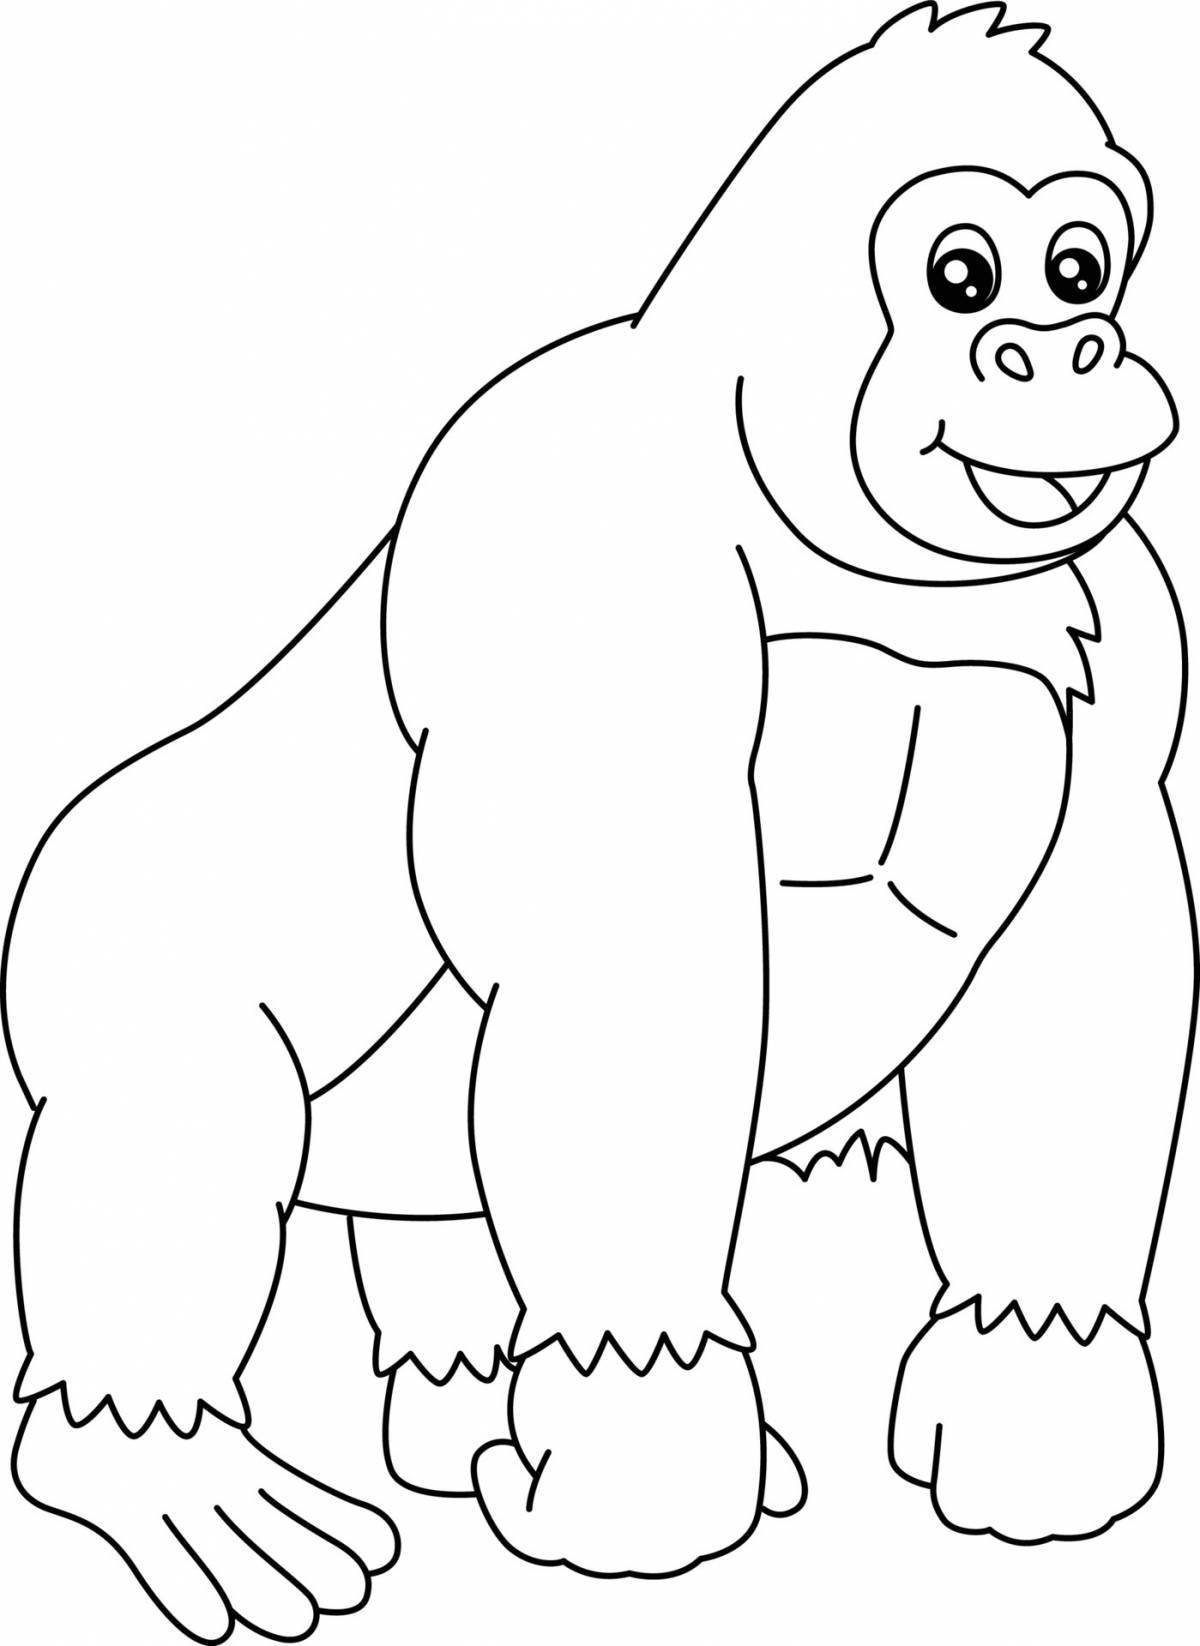 Сказочная горилла-раскраска для детей